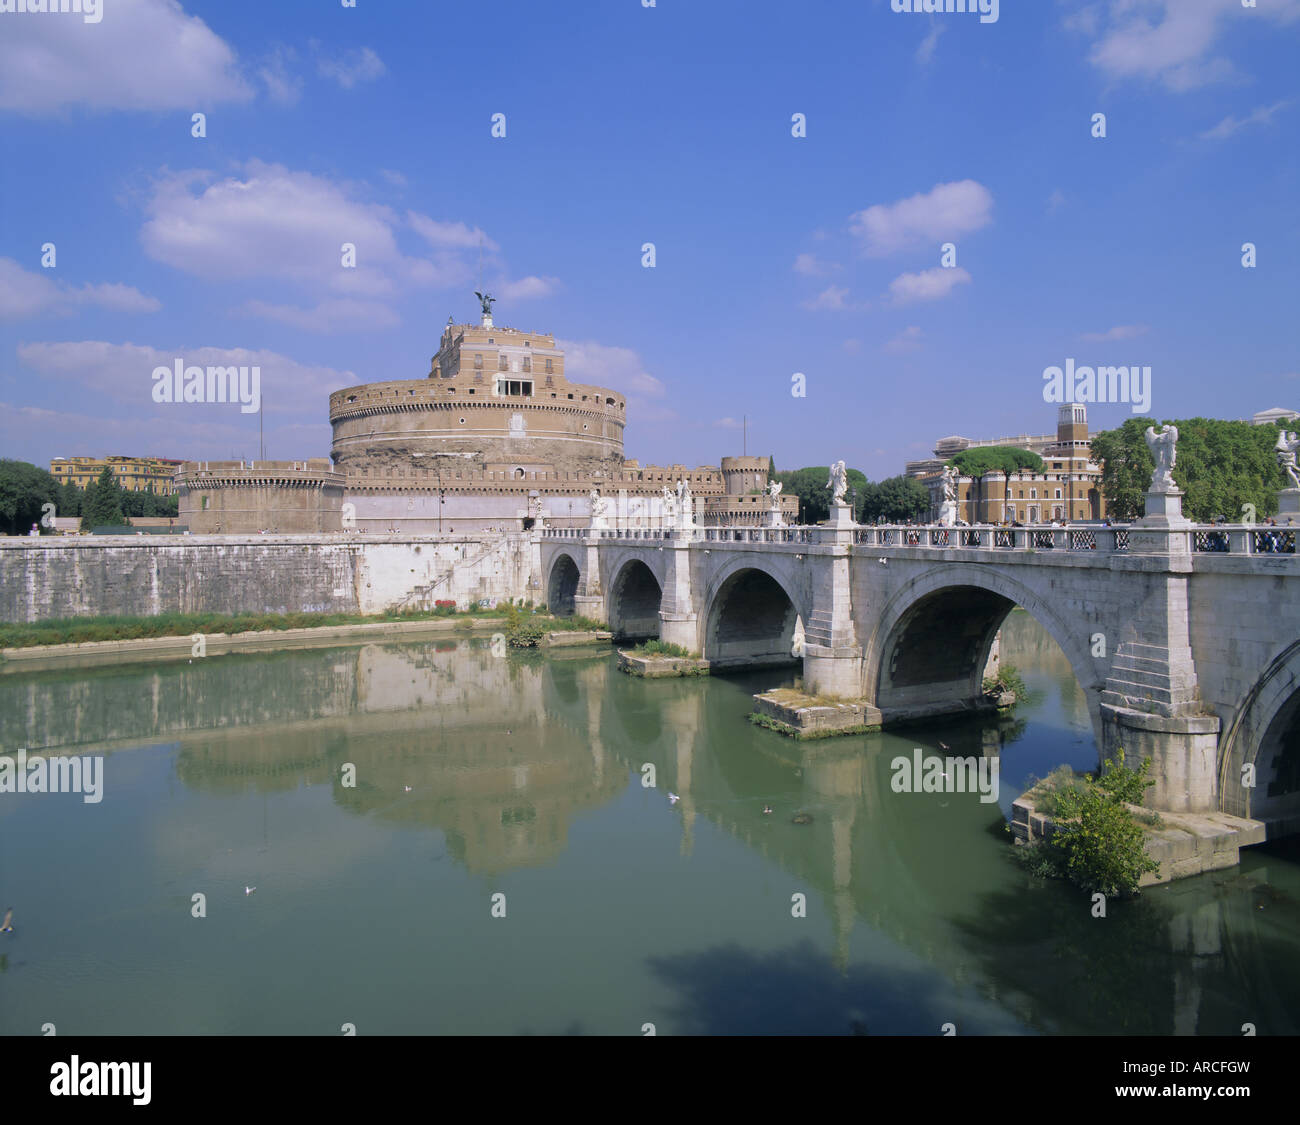 Castel S. Angelo (Castel Sant'Angelo), Ponte S. Angelo (Ponte Sant'Angelo), Fiume Tevere (Tiber River), Rome, Lazio, Italy Stock Photo